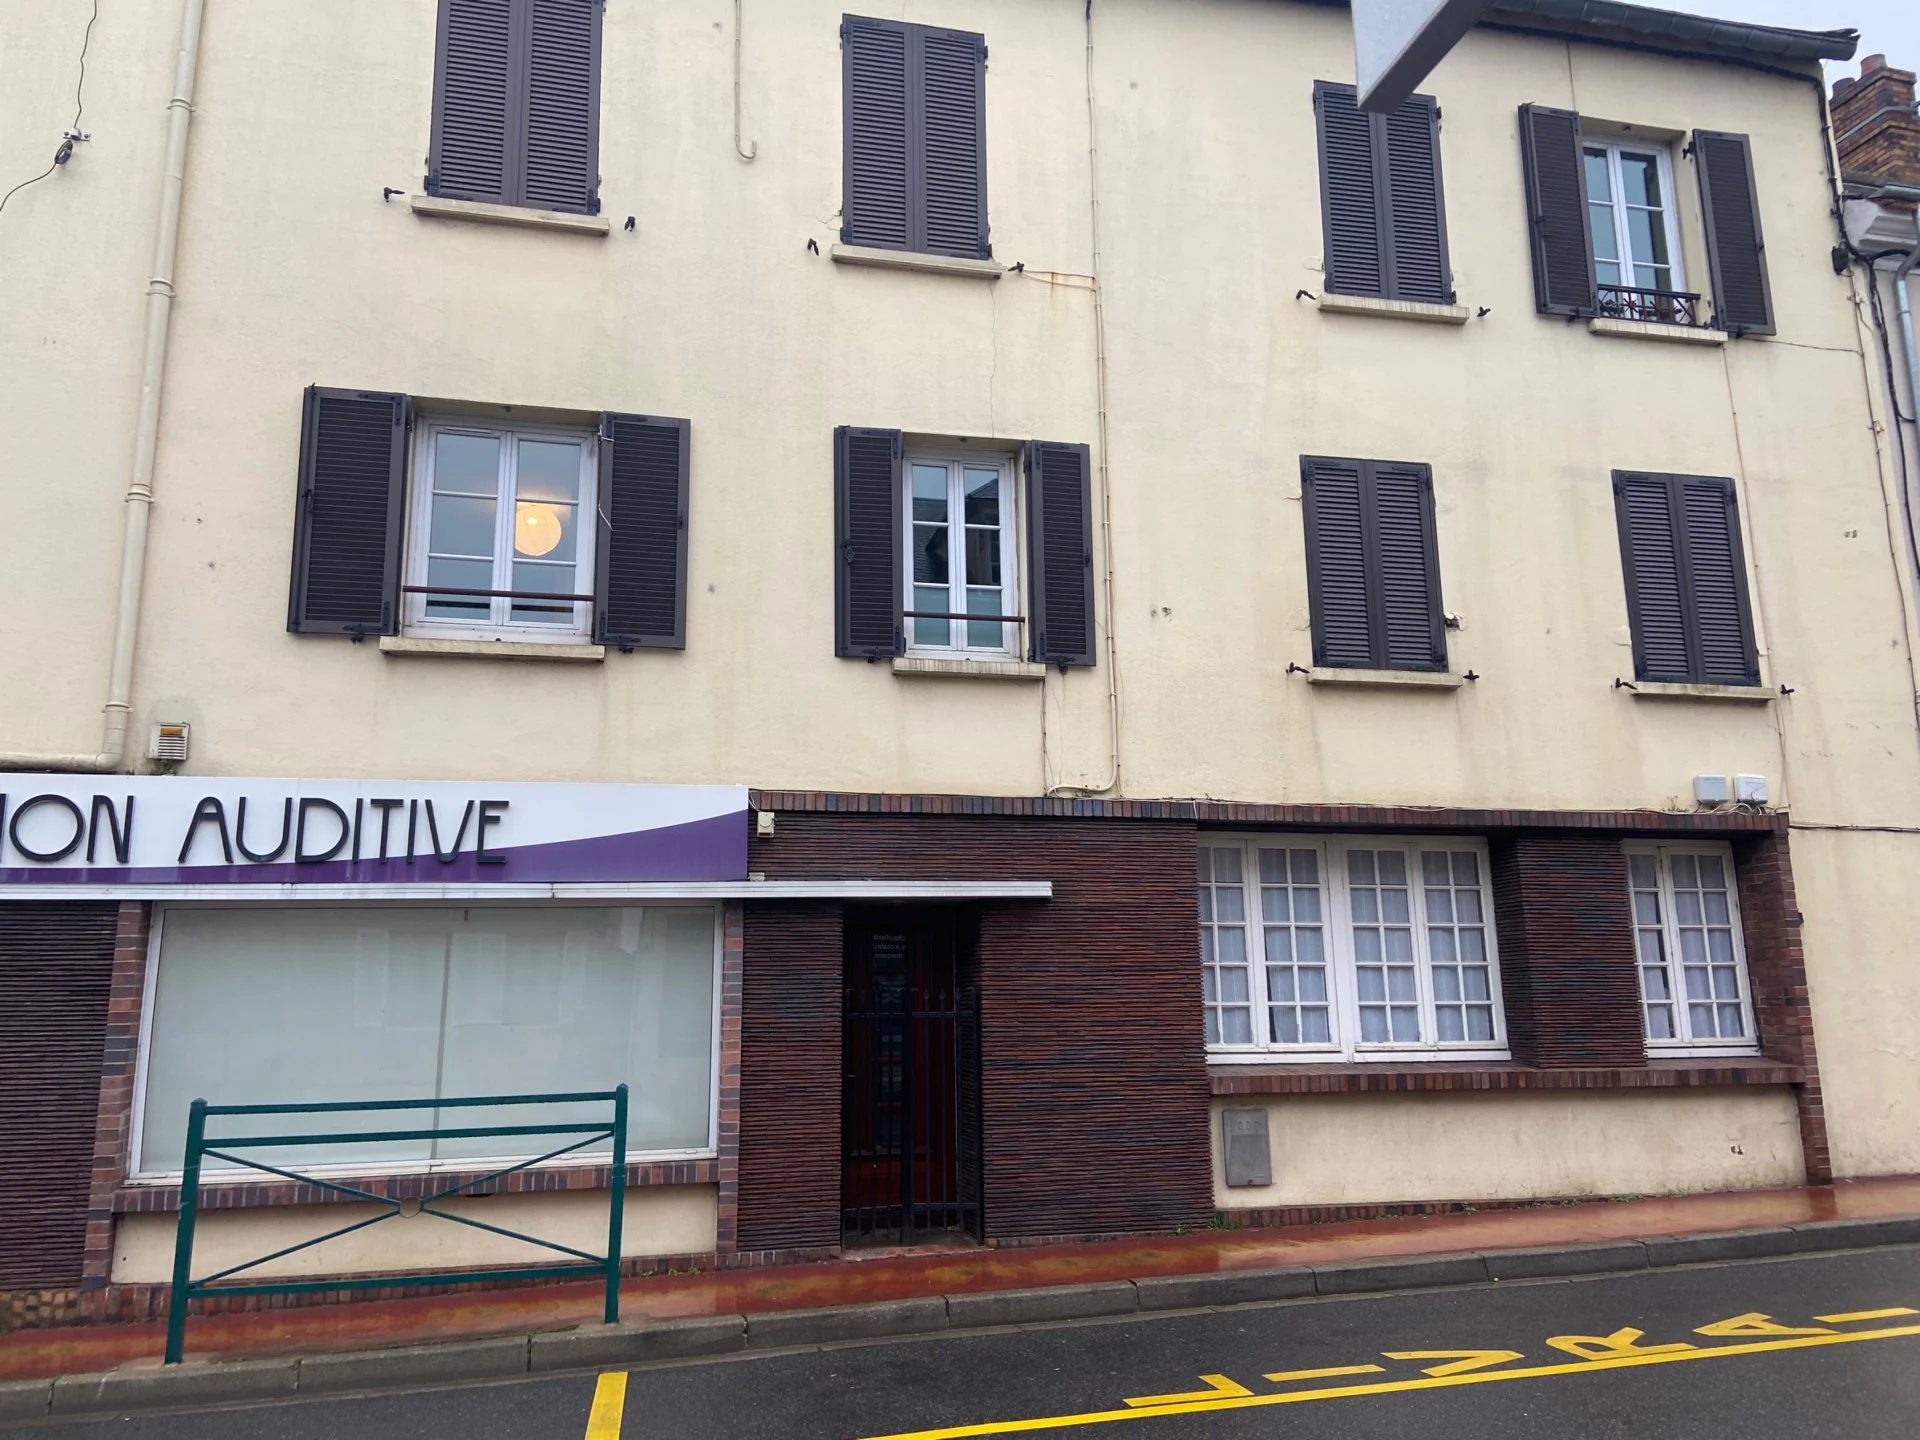 Sale Housing estate - Saint-Chéron